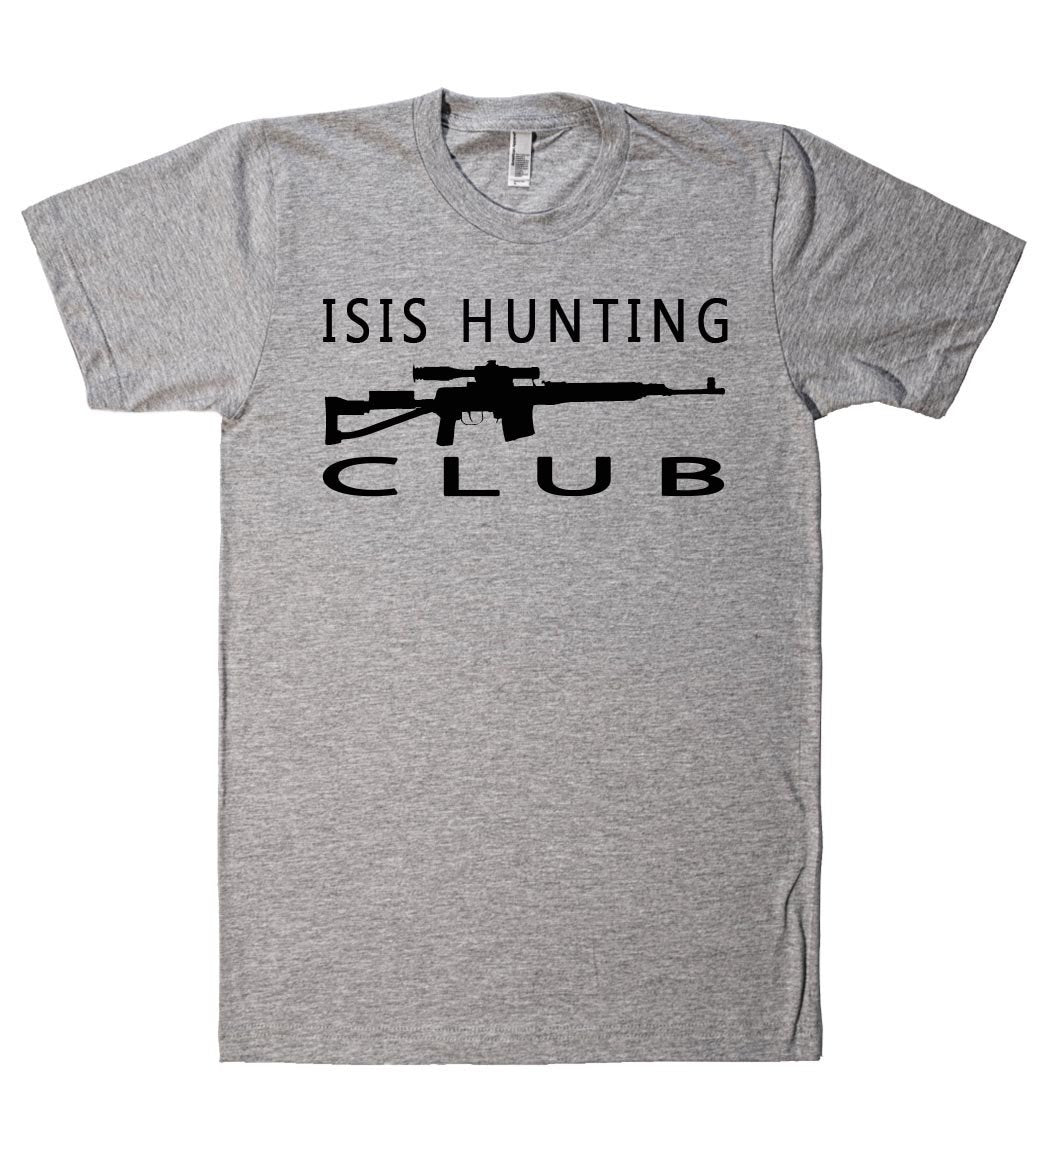 isis hunting club tshirt - Shirtoopia